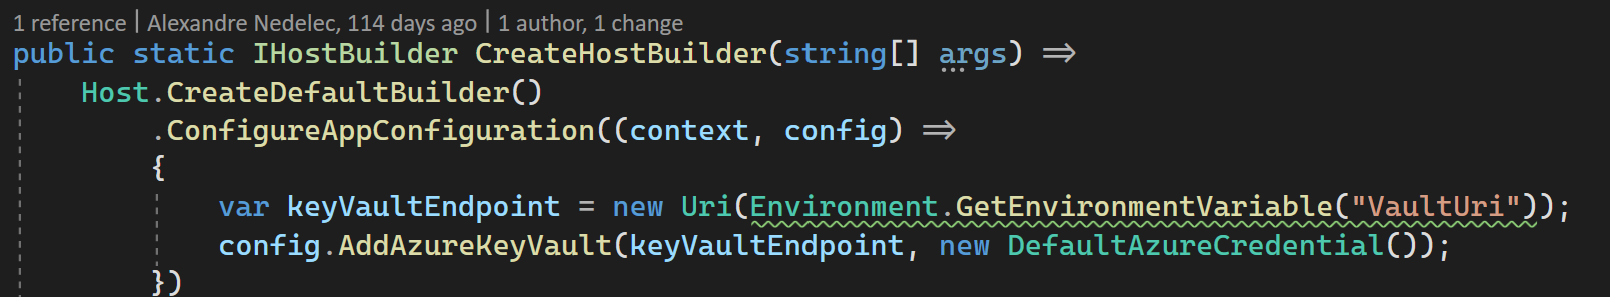 Code for using ConfigureAppConfiguration in Program.cs.